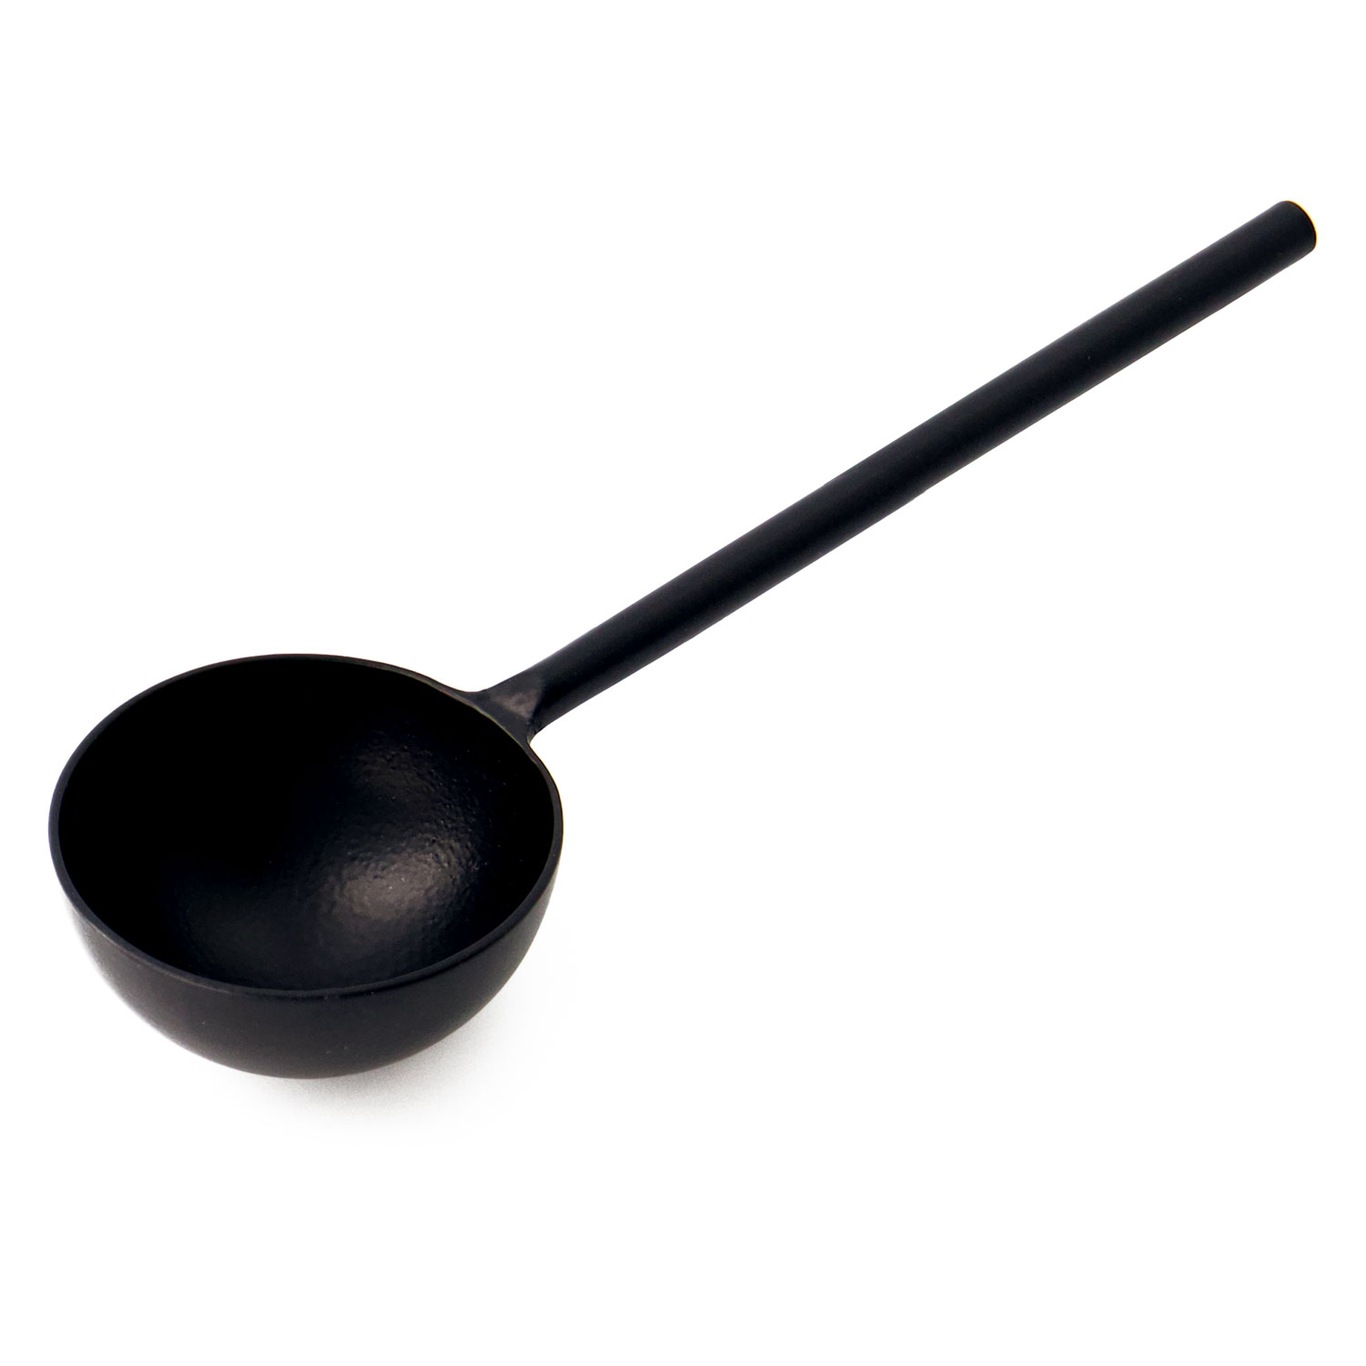 Coffee Spoon With Loop, Black